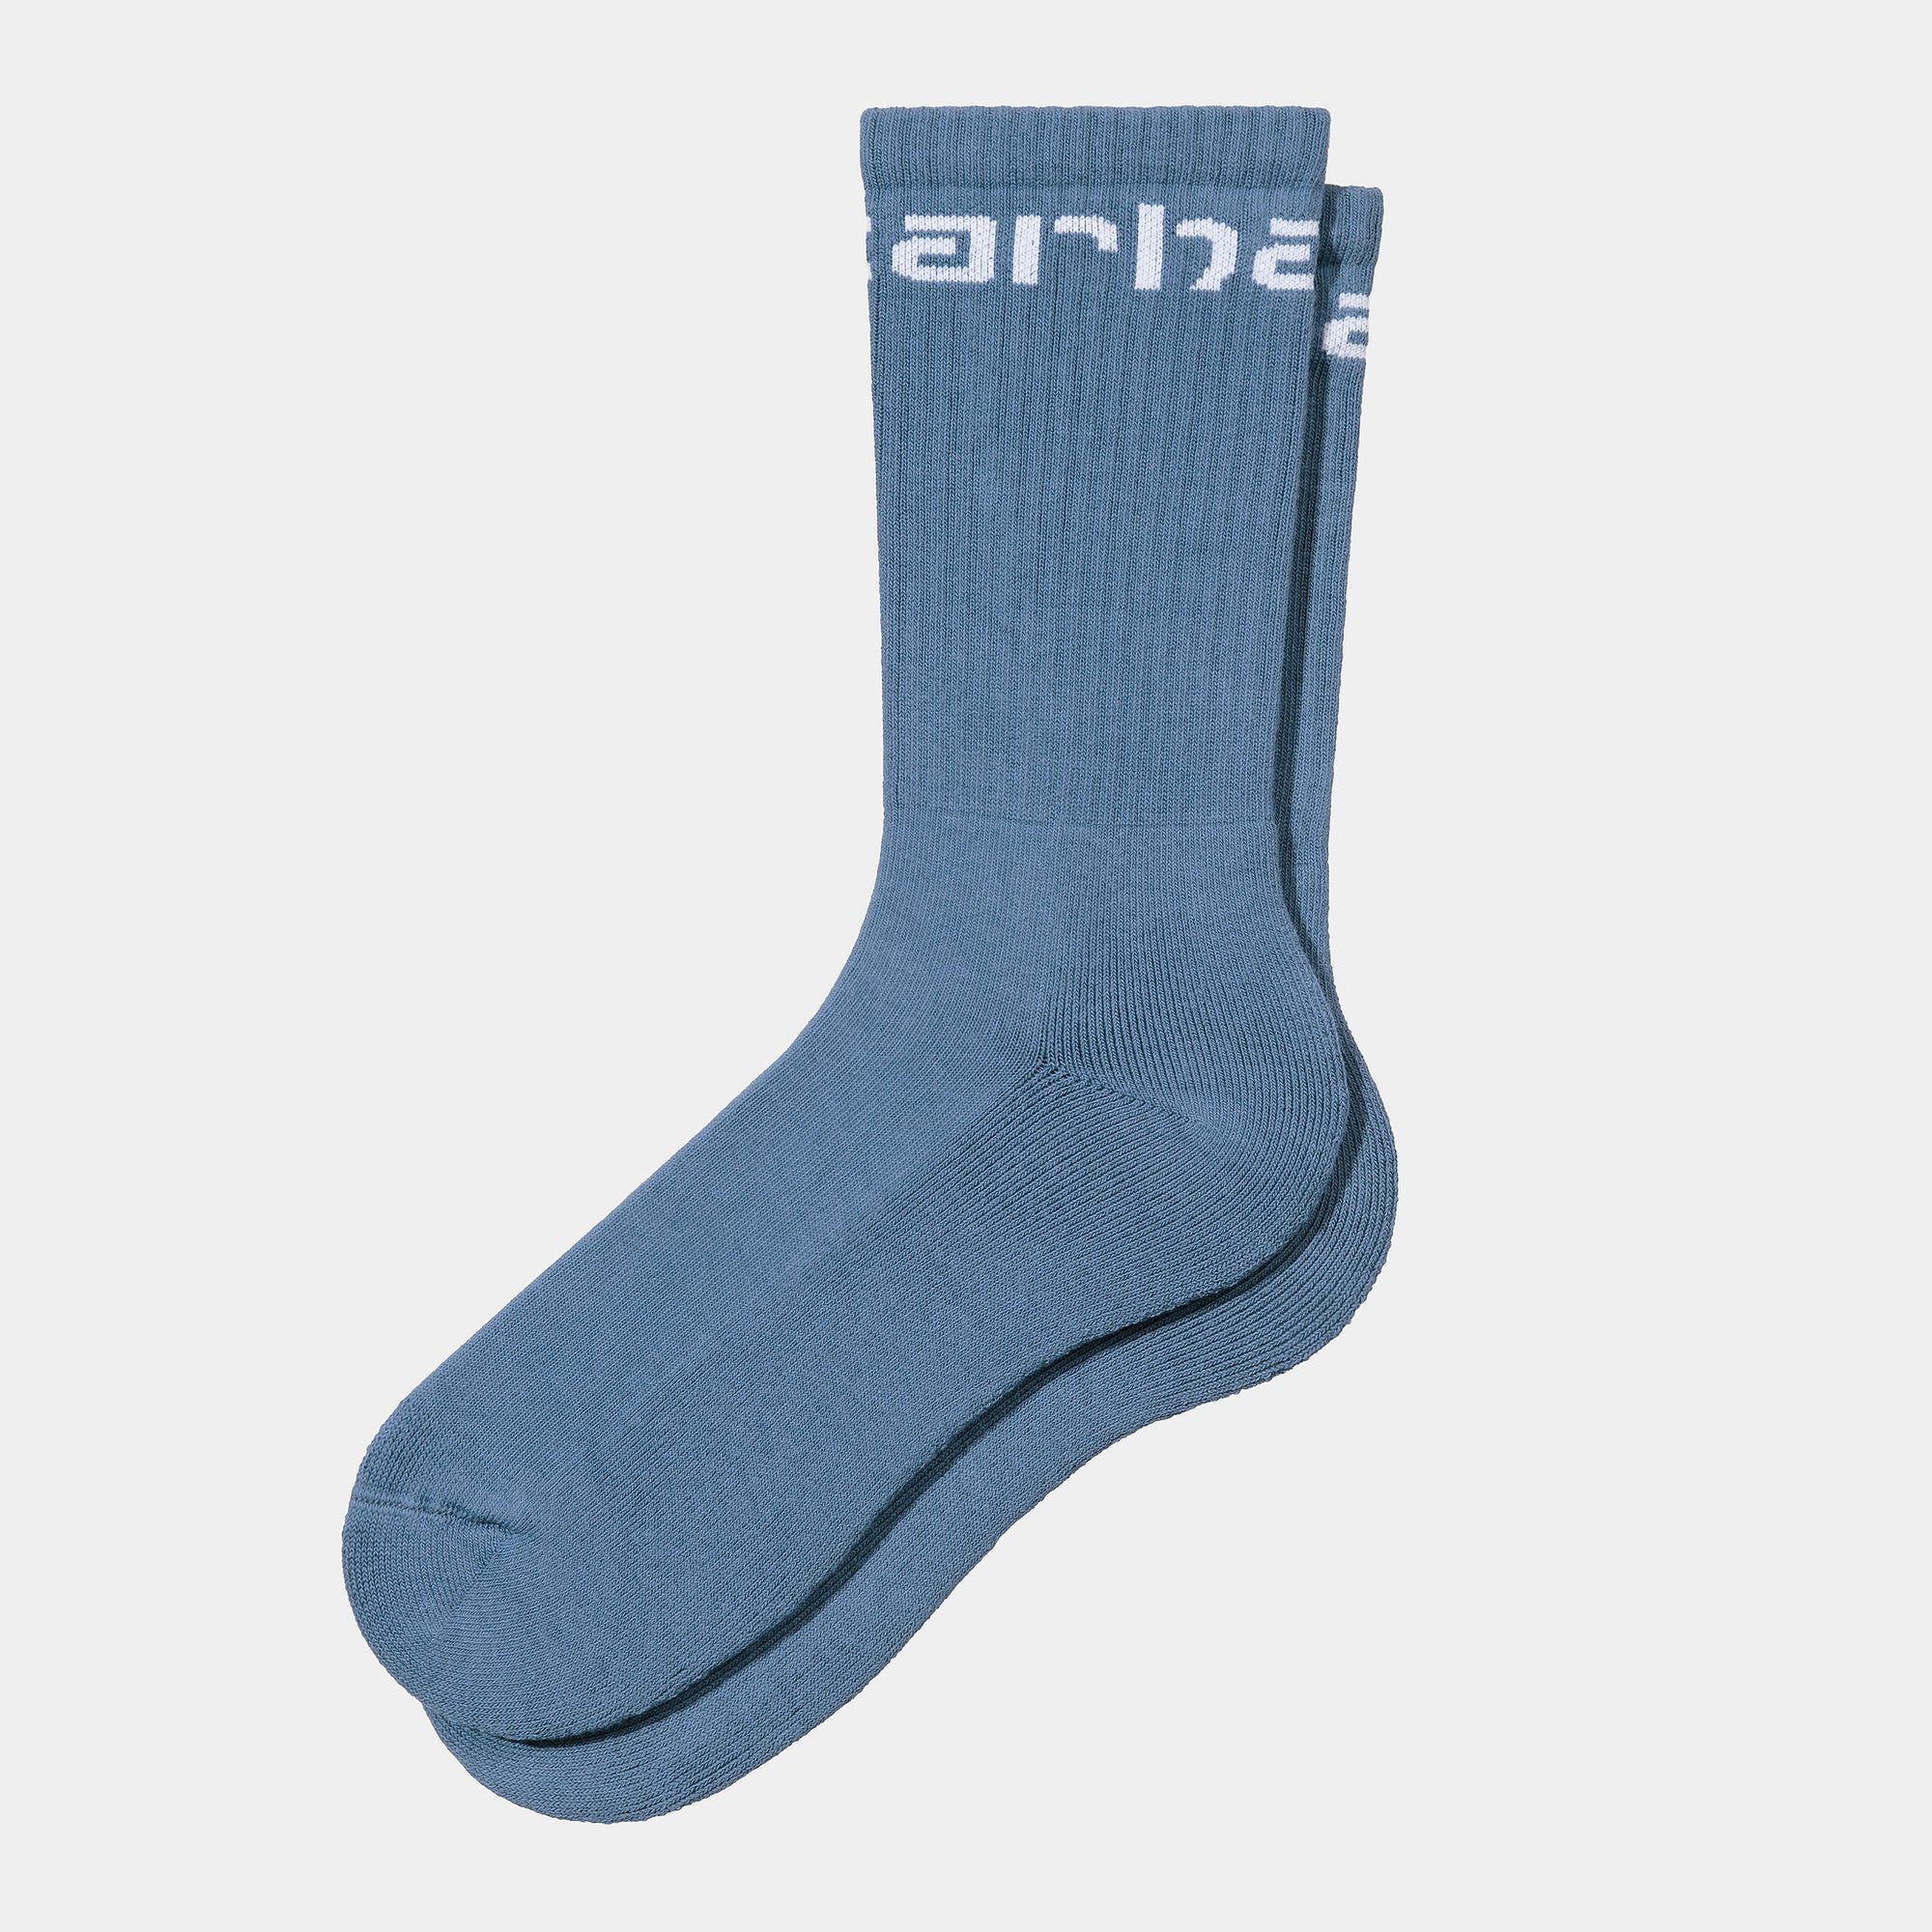 Carhartt WIP Socks - Sorrent / White